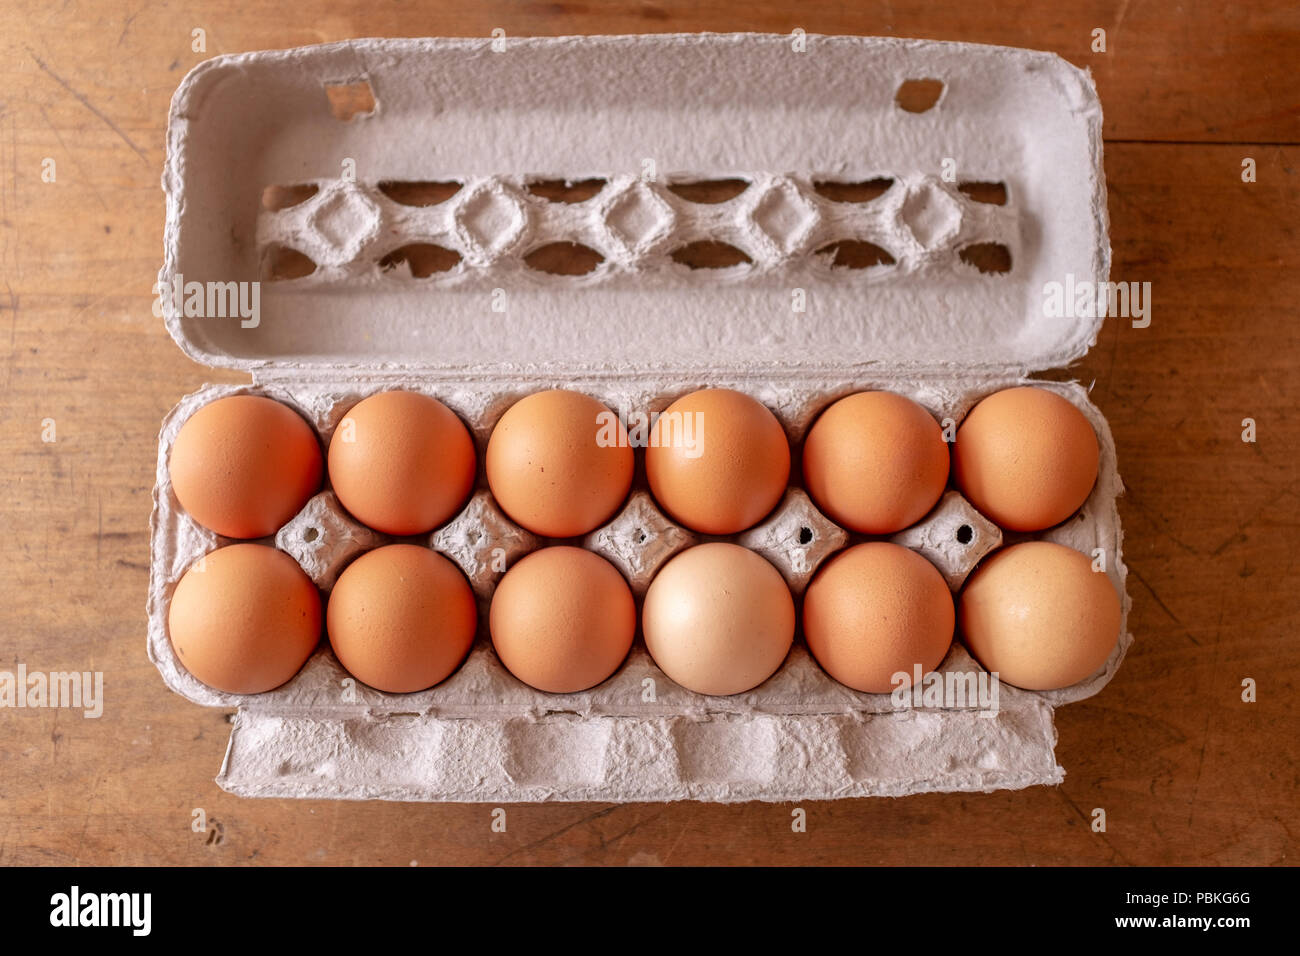 Faltschachtel Mit Einem Dutzend Eier Stockfotografie Alamy